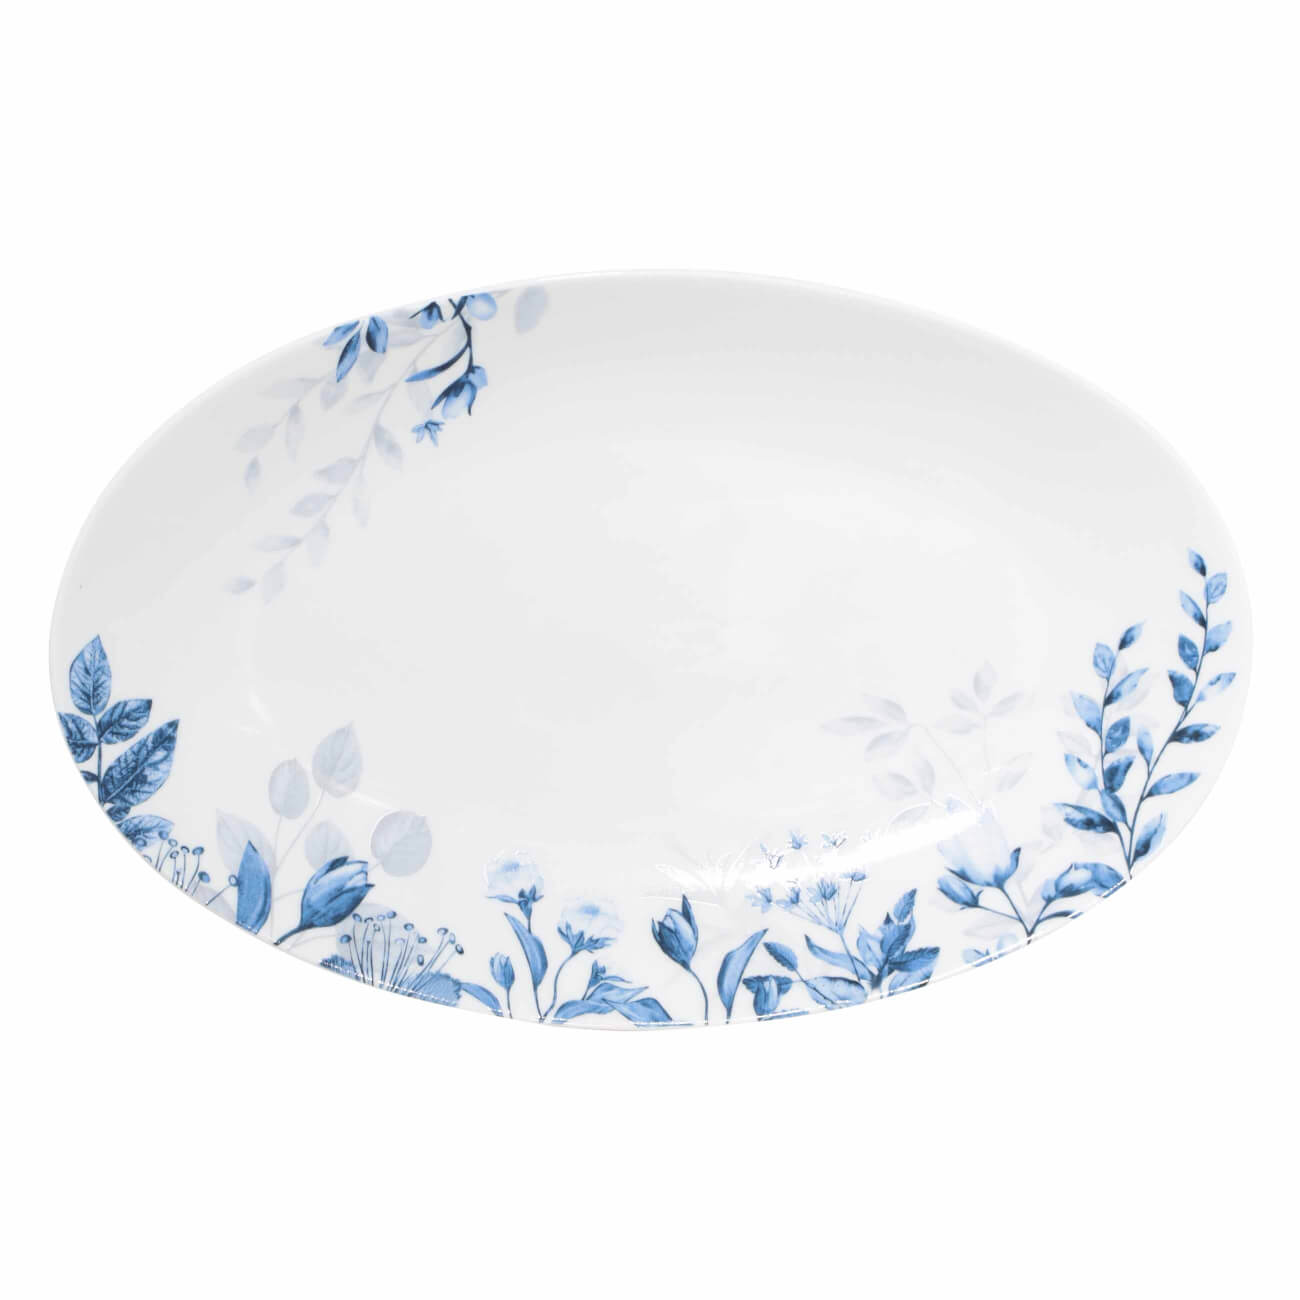 Блюдо, 30х19 см, фарфор N, овальное, белое, Синие цветы, Royal flower блюдо круглое мелкое bernadotte декор синие вензеля 32 см